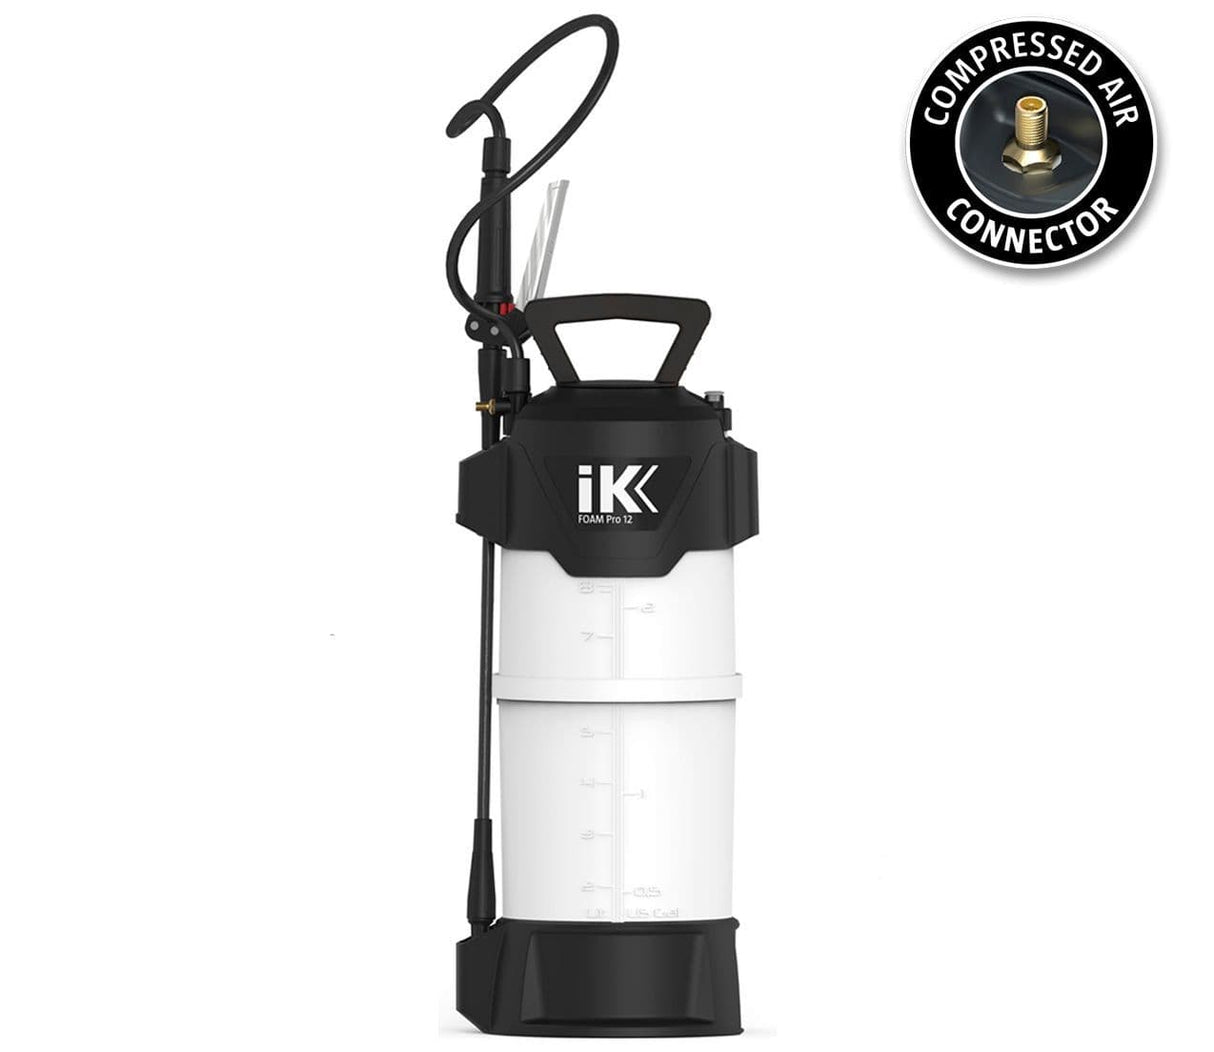 iK Foam PRO 12 Large Foaming Pressure Sprayer